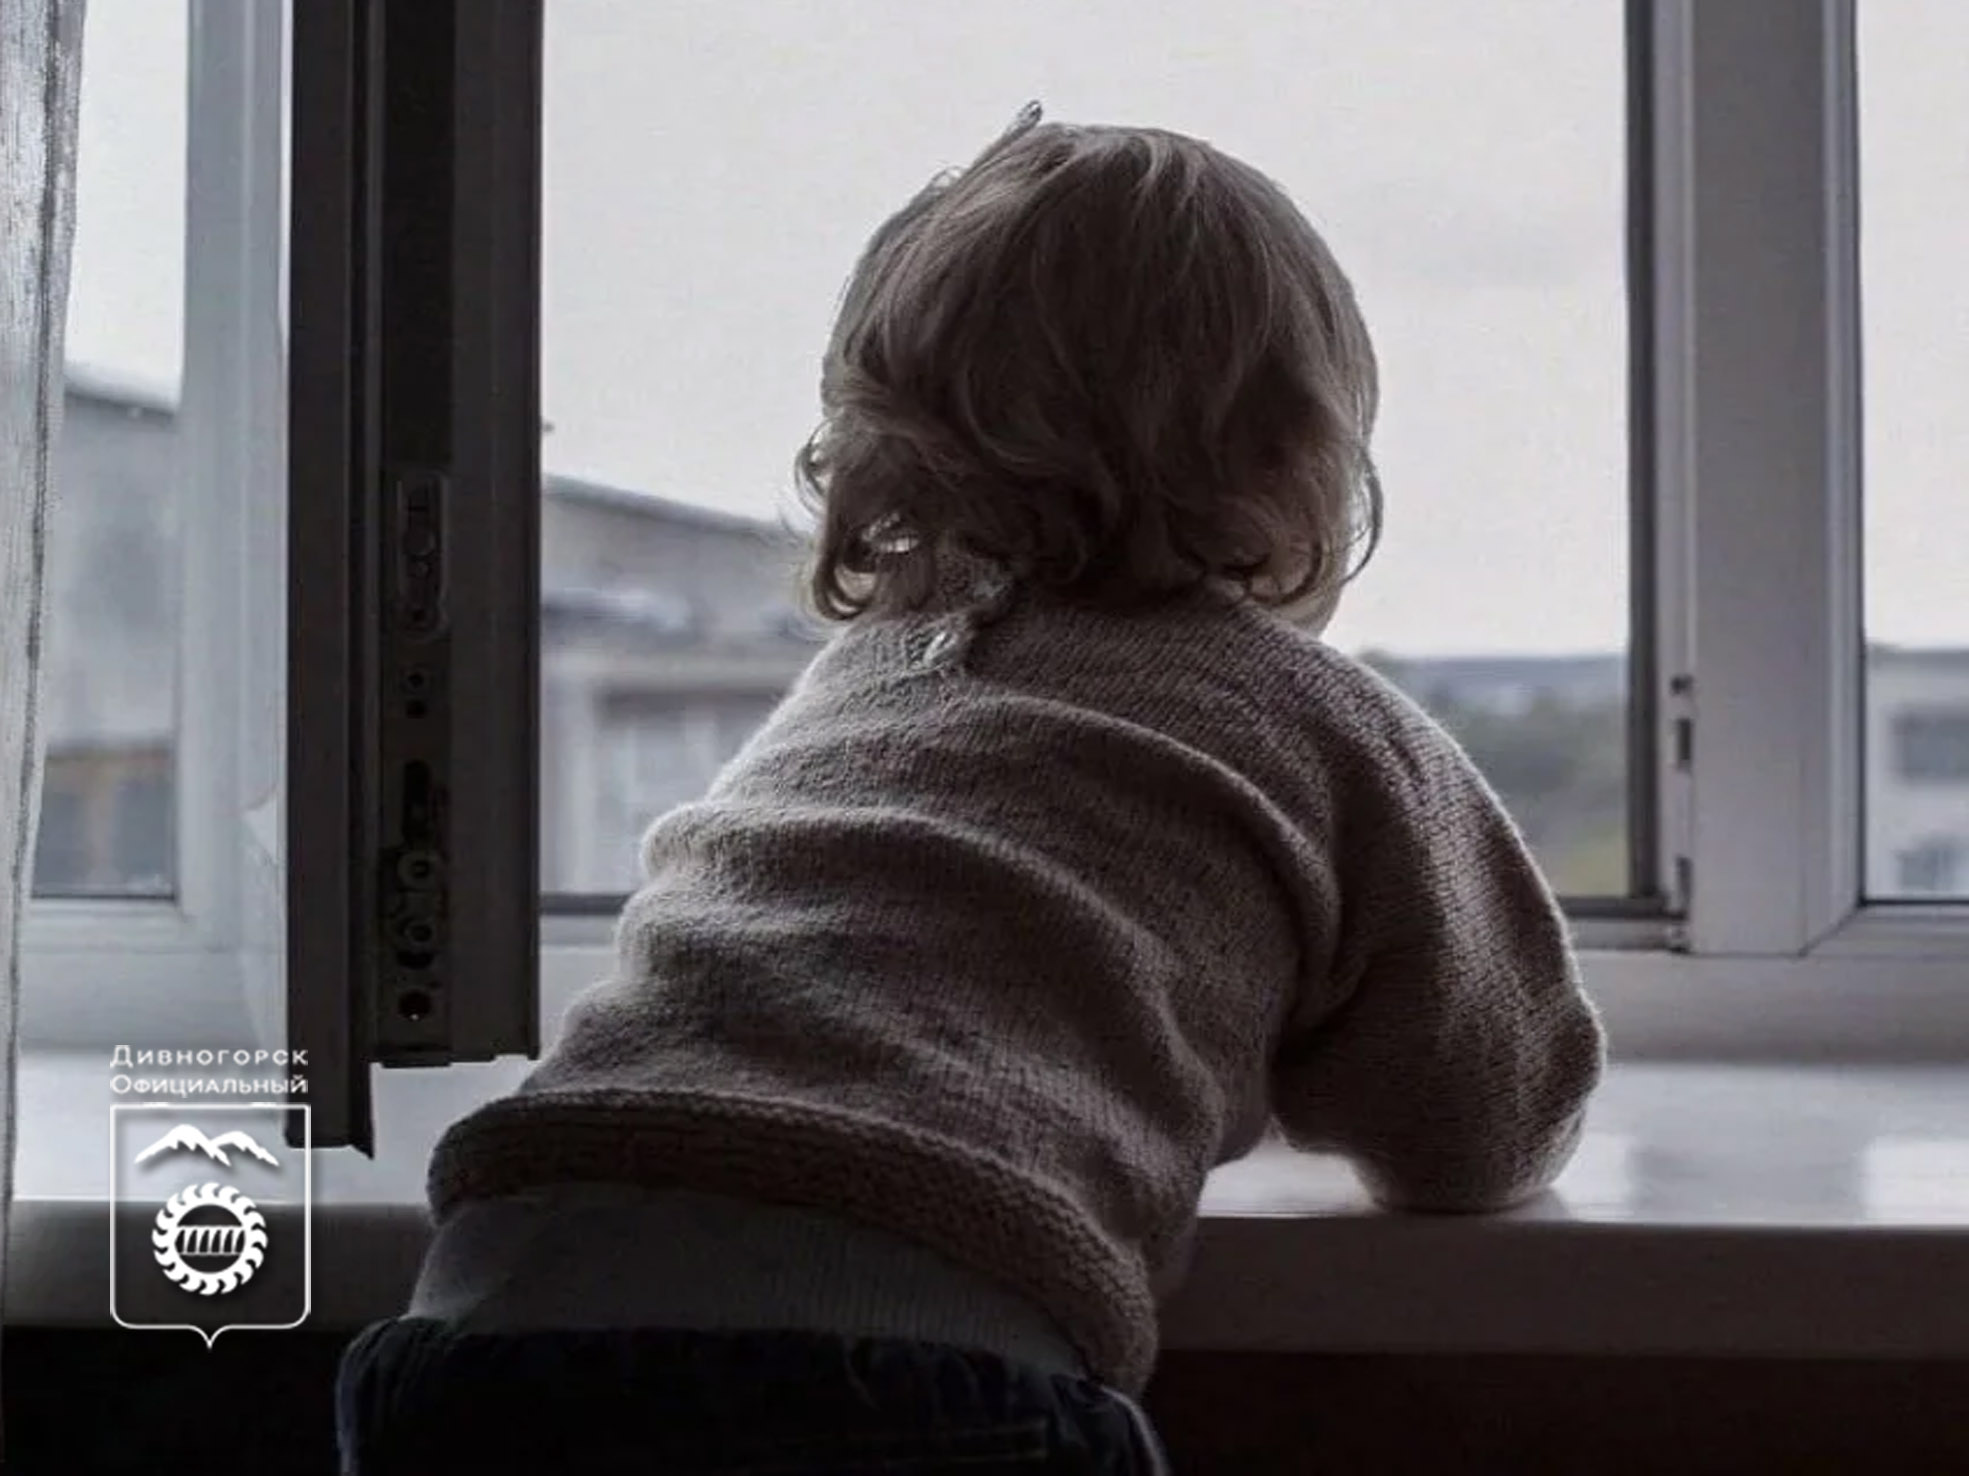 В России более 1000 детей ежегодно выпадают из окон квартир.